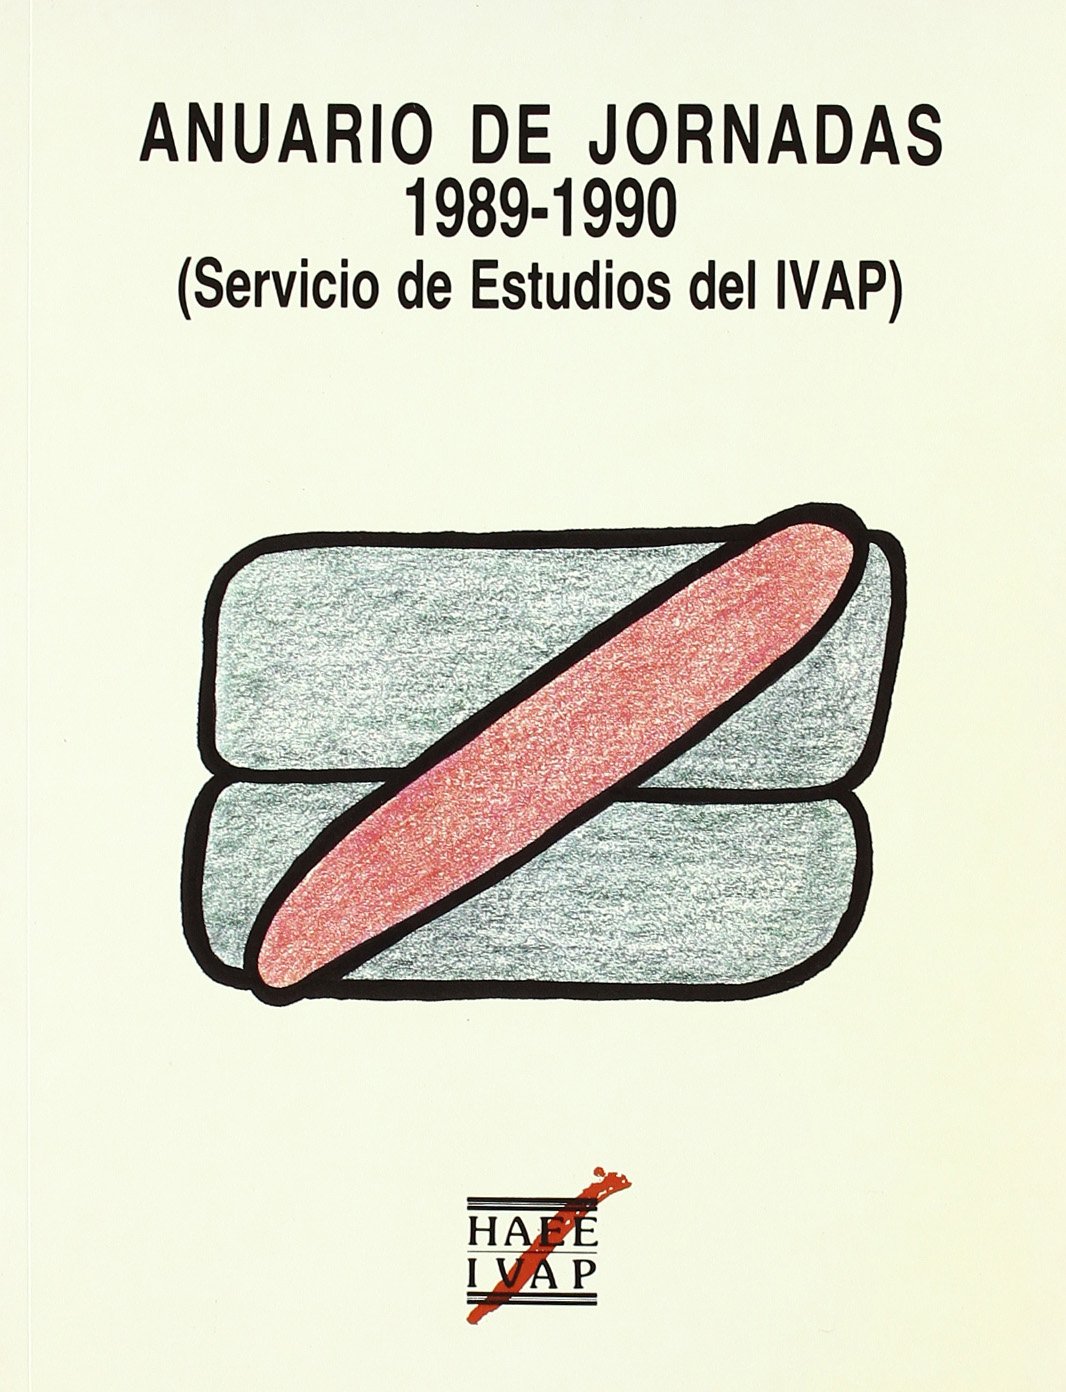 Imagen de portada del libro Anuario de jornadas 1989-1990: (Servicio de Estudios del IVAP)